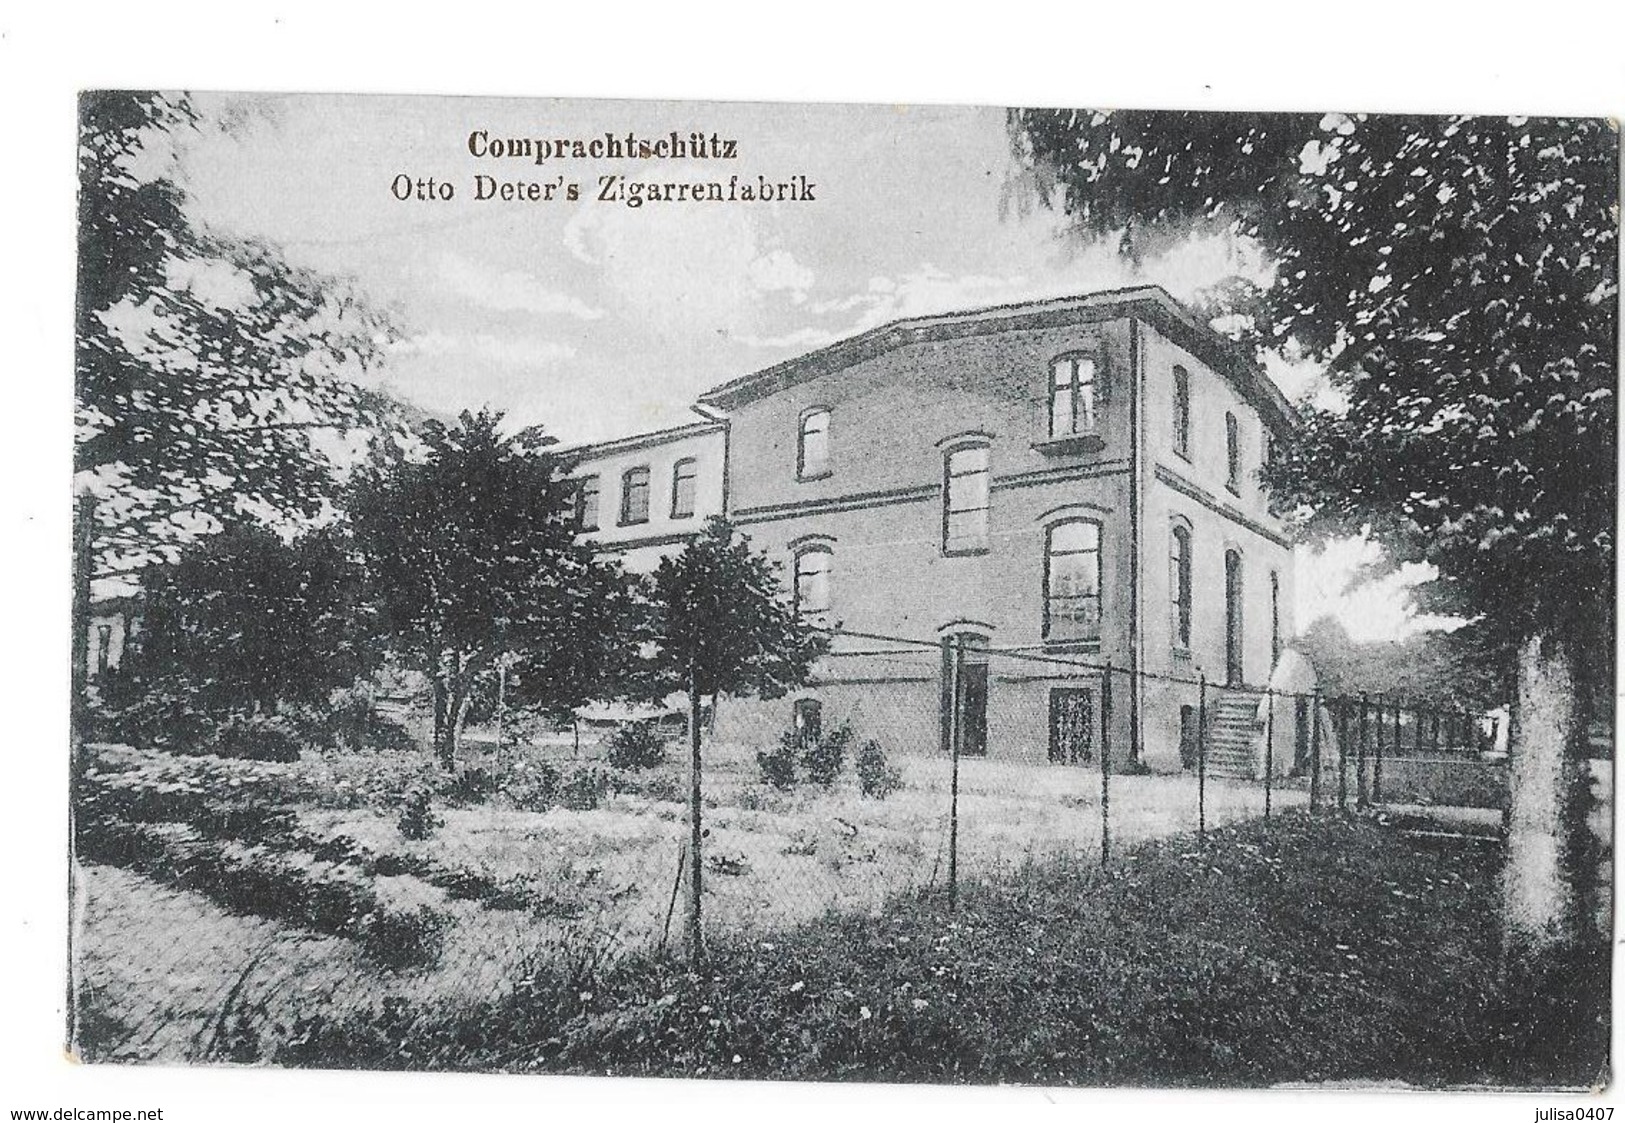 KOMPRACHCICE COMPRACHTSCHUTZ (Pologne) Otto Deter's Zigarrenfabrik - Pologne